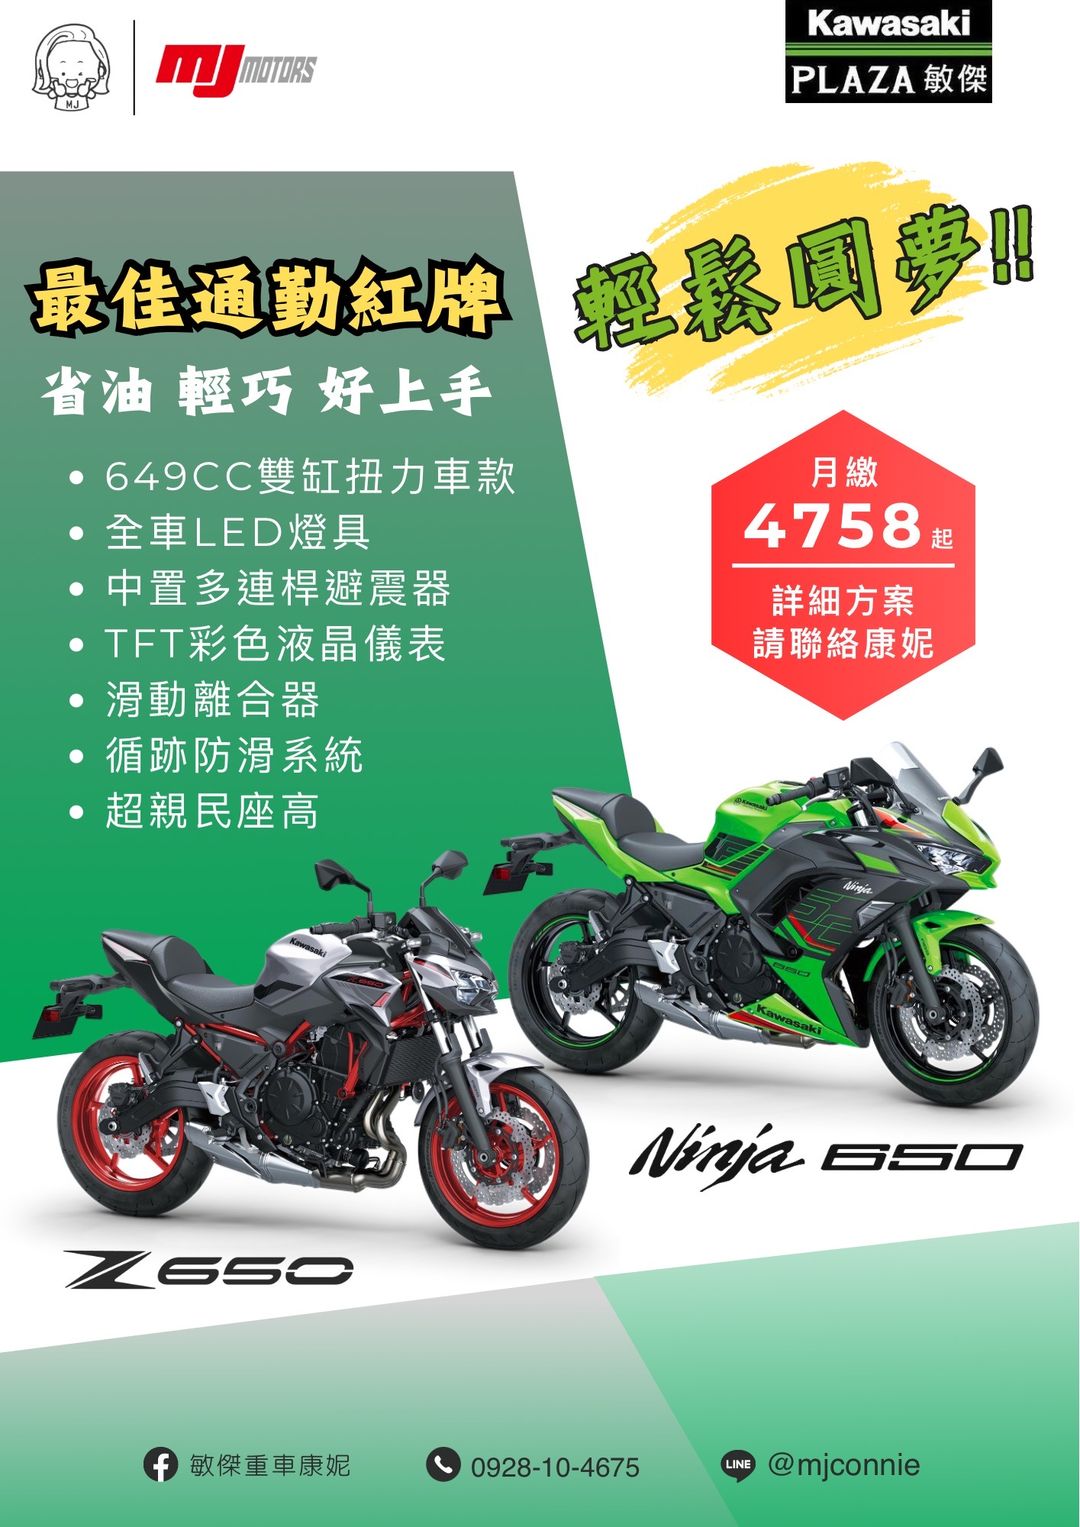 【敏傑車業資深銷售專員 康妮 Connie】KAWASAKI Z650 - 「Webike-摩托車市」 『敏傑康妮』最好上手 最穩定的紅牌檔車~ Kawasaki Ninja650 / Z650 是您入門紅牌最安心的選擇